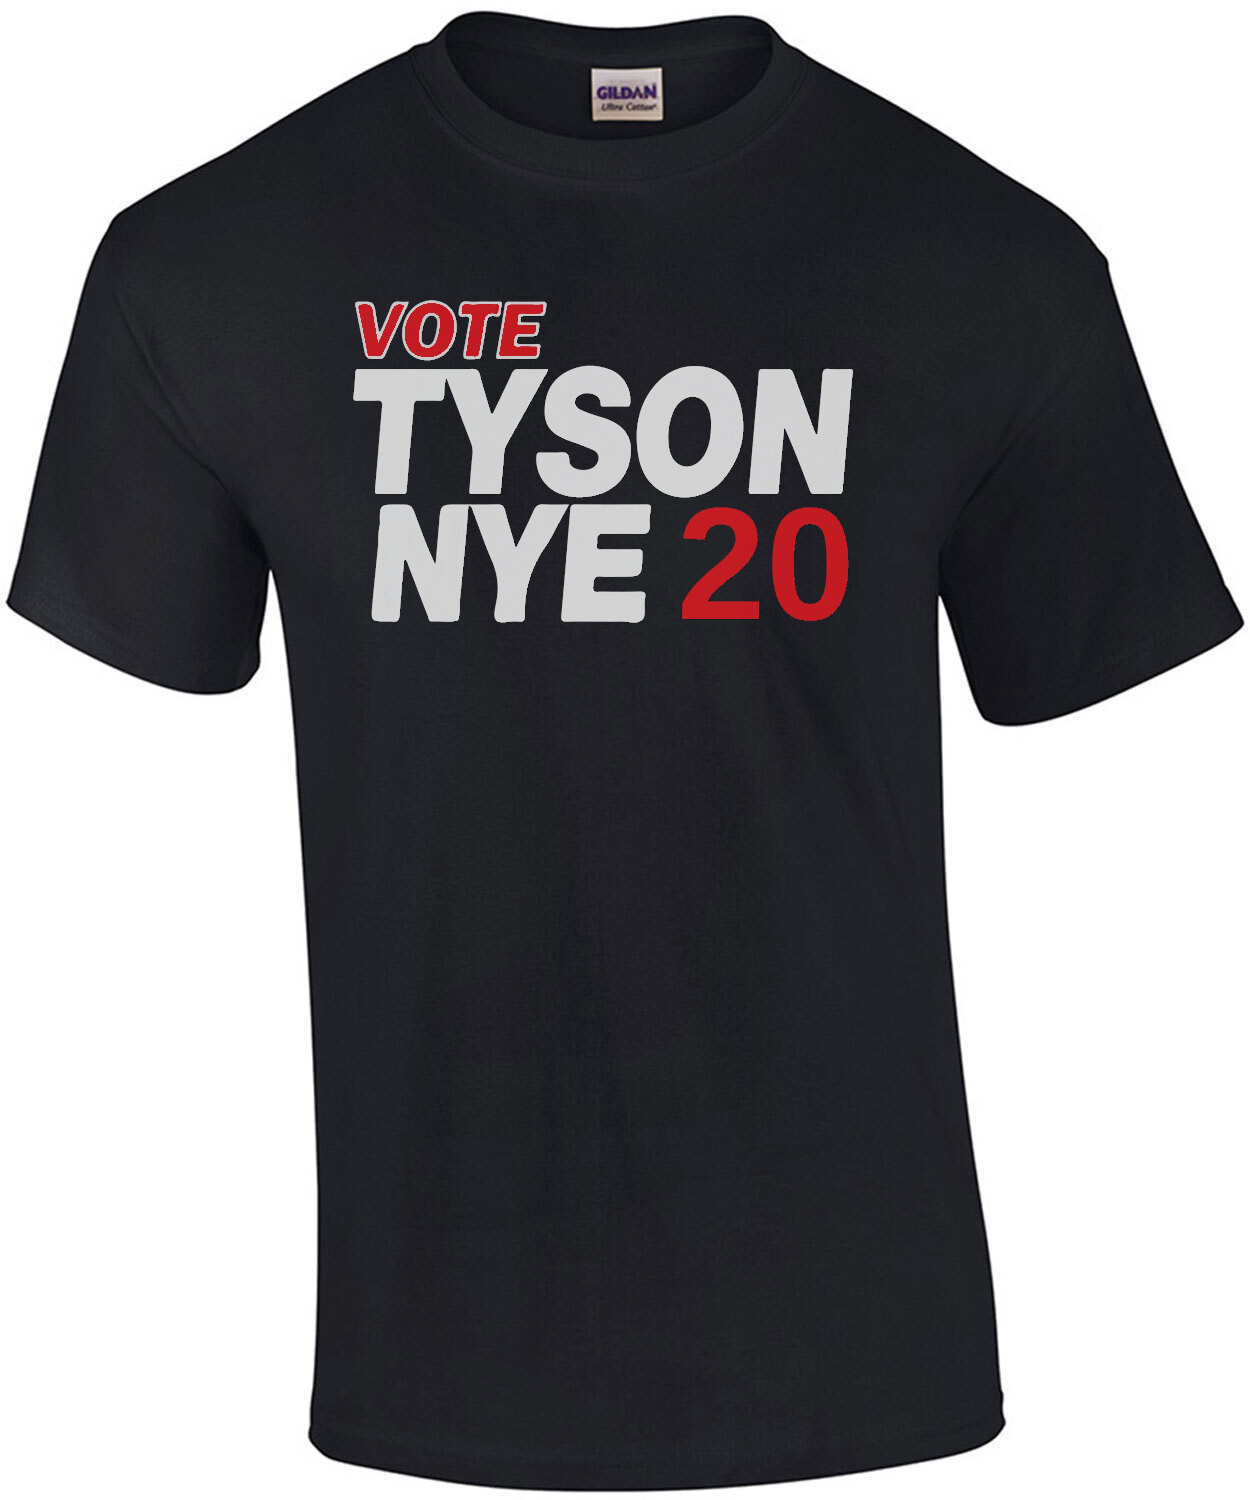 Vote TYSON NYE 2020 shirt